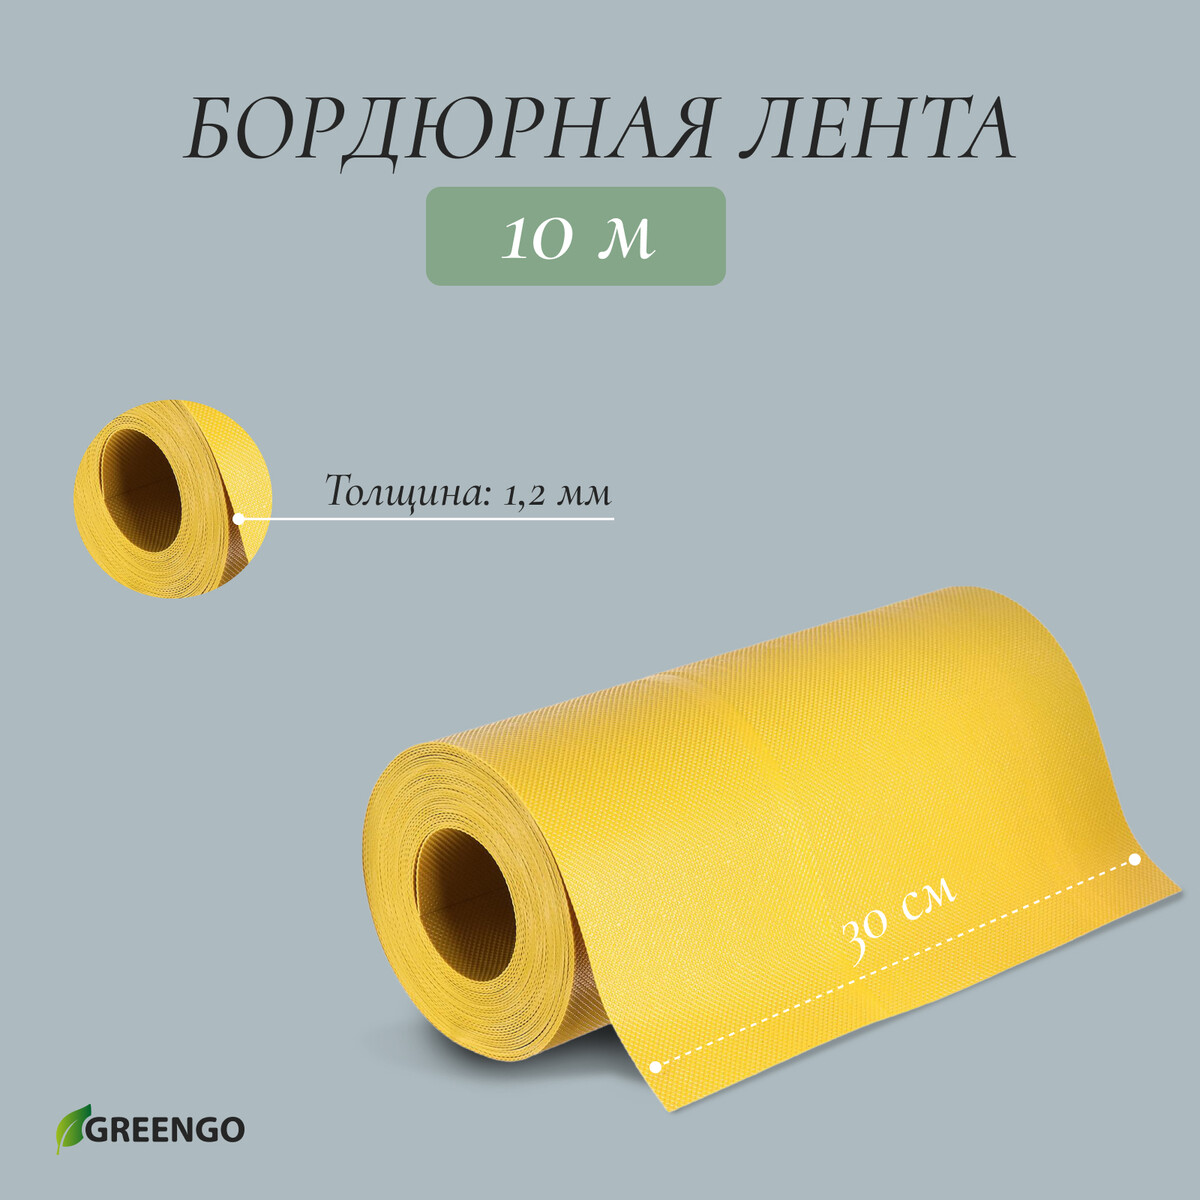 Лента бордюрная, 0.3 × 10 м, толщина 1.2 мм, пластиковая, желтая, greengo лента бордюрная 0 15 × 10 м толщина 1 2 мм пластиковая коричневая greengo